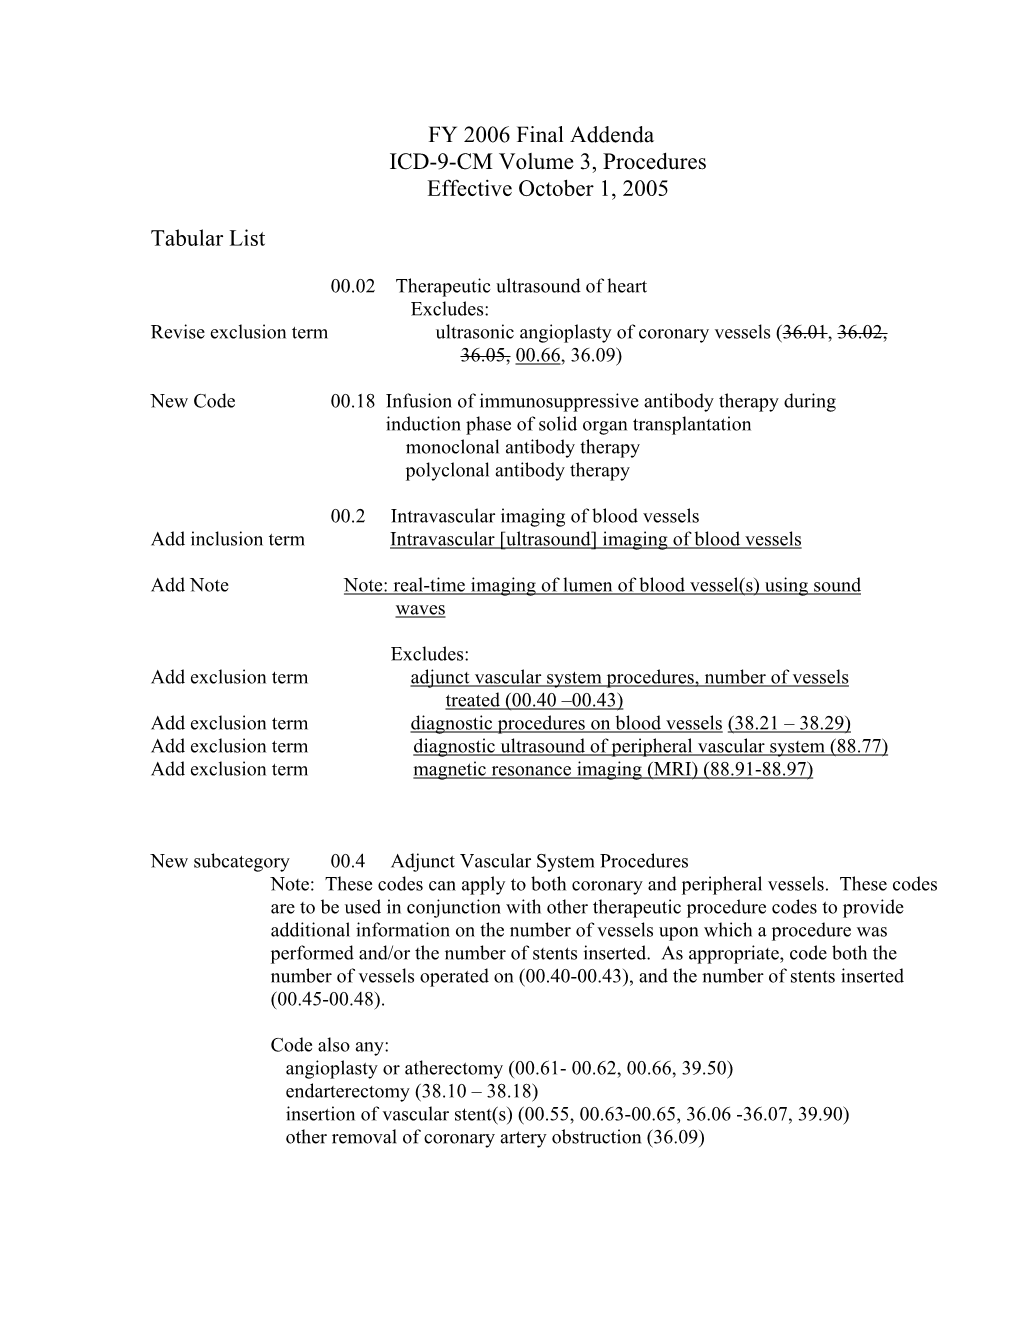 FY 2006 Final Addenda ICD-9-CM Volume 3, Procedures Effective October 1, 2005